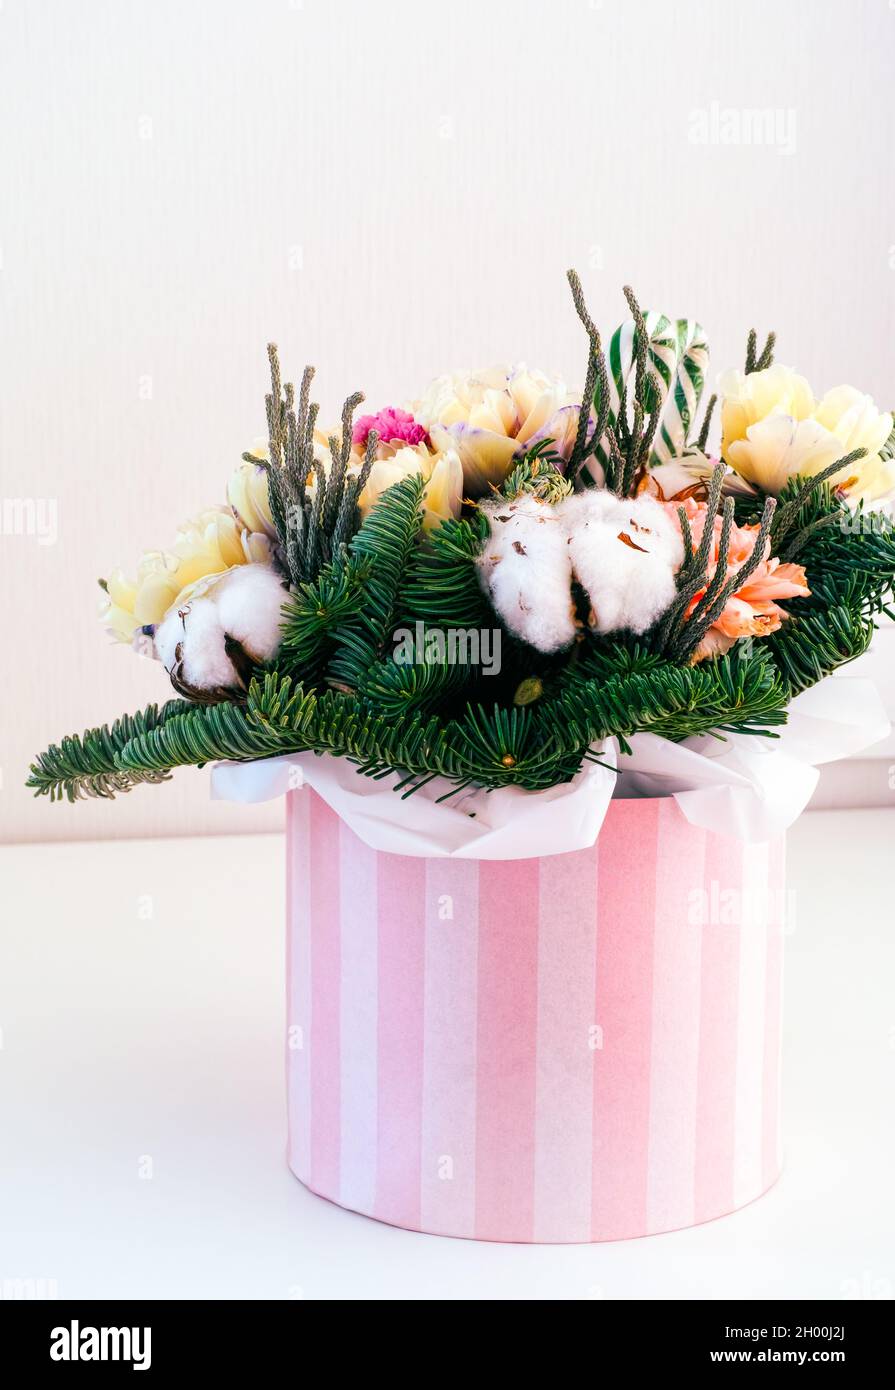 Bella composizione floreale invernale con fiore di cotone, rami di abete rosso, tulipani e garofani in una scatola a righe. Foto Stock